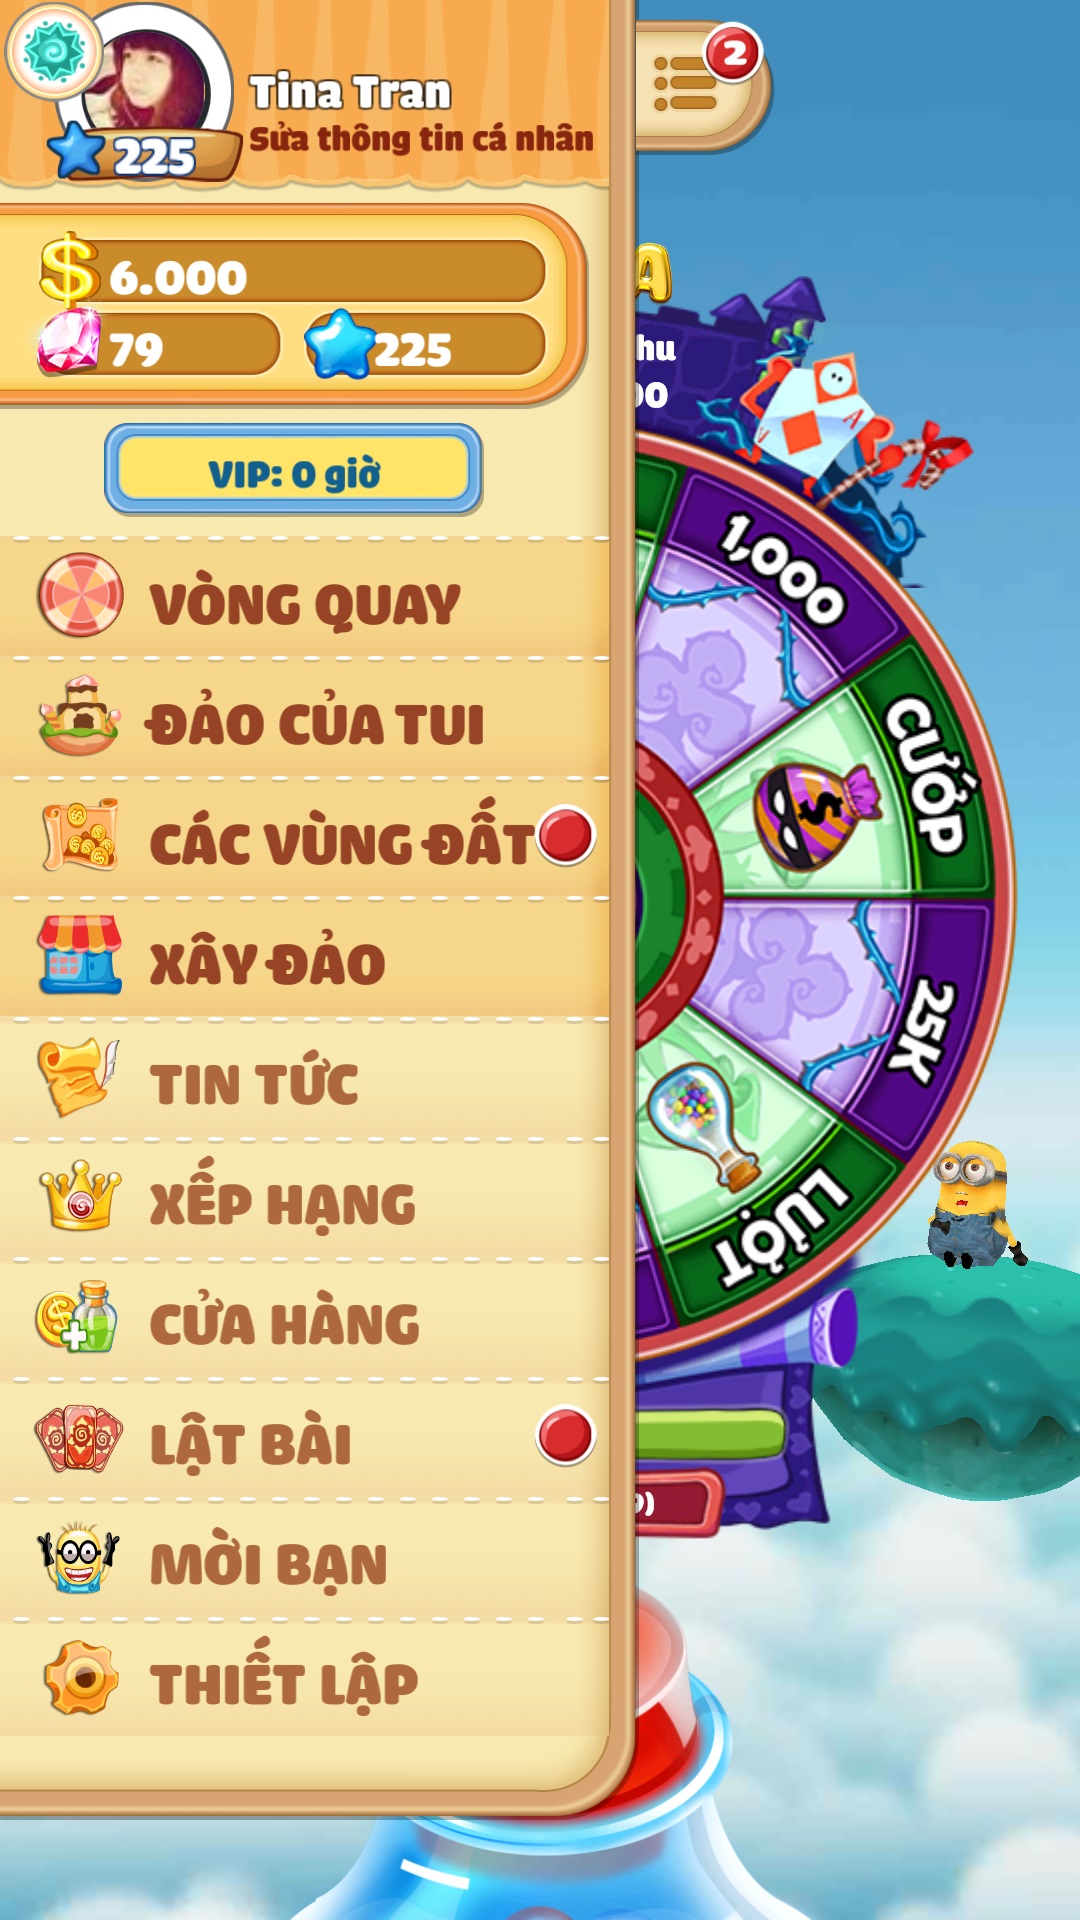 Ra mắt tựa game gây tranh cãi – Vua Phá Hoại hay Pirate kings Việt Nam?